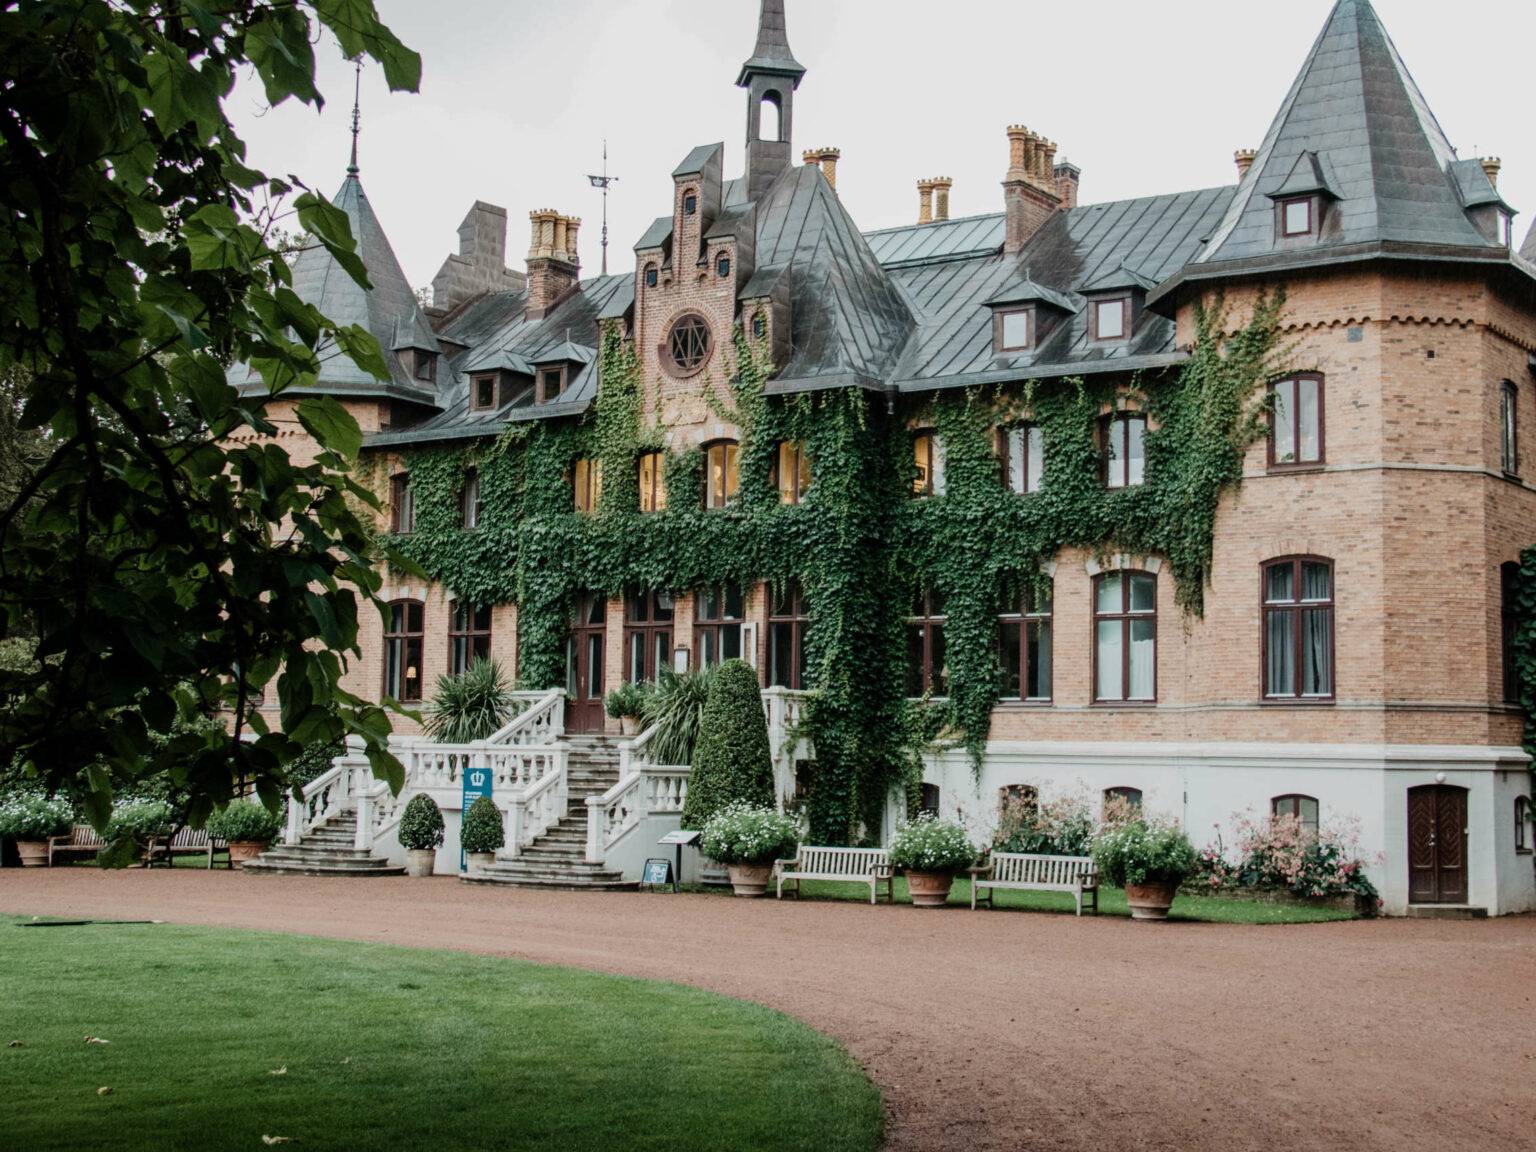 Das Schloss Sofiero liegt in einer grünen Parkanlage hinter einem roten Steinweg, das herrschaftliche Anwesen ist mit Efeu bewachsen und hat ein graues Dach, zwei Erker stehen hervor.